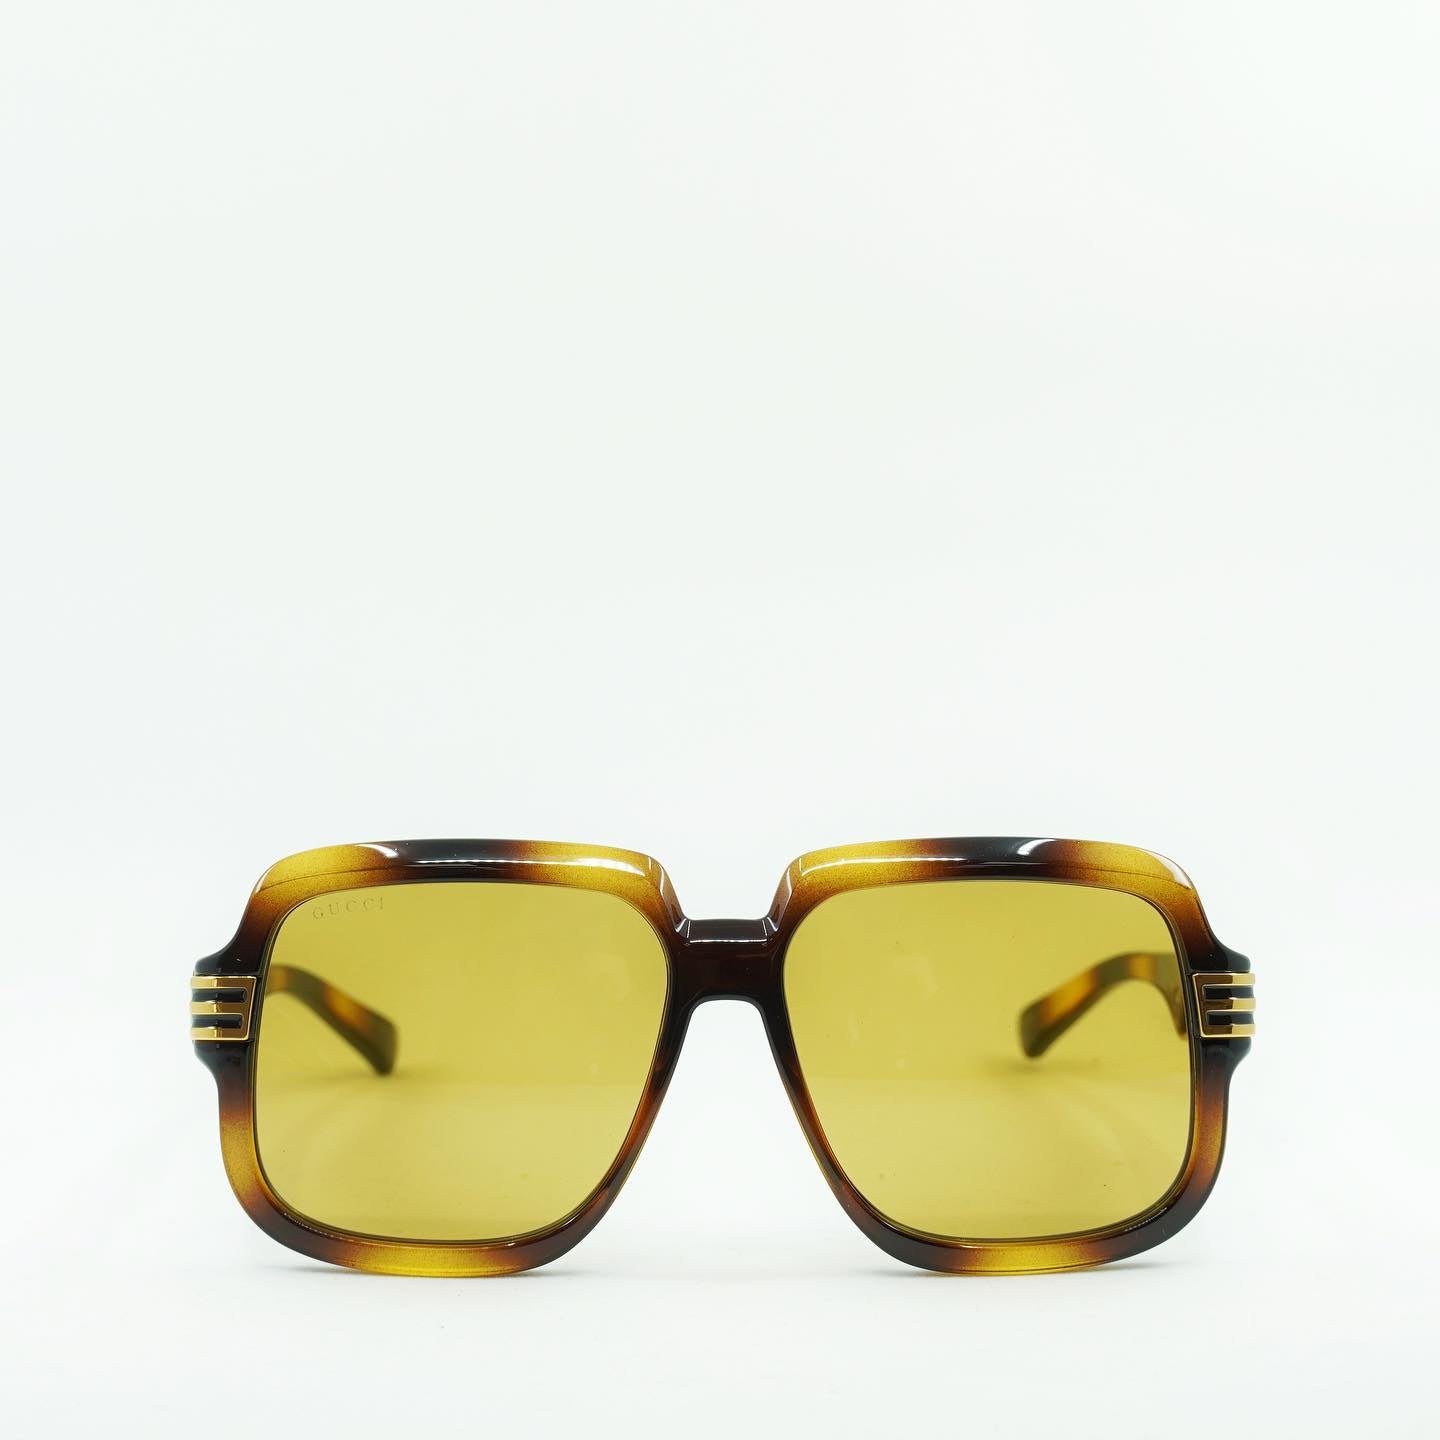 Gucci GG0979S-002 59mm New Sunglasses